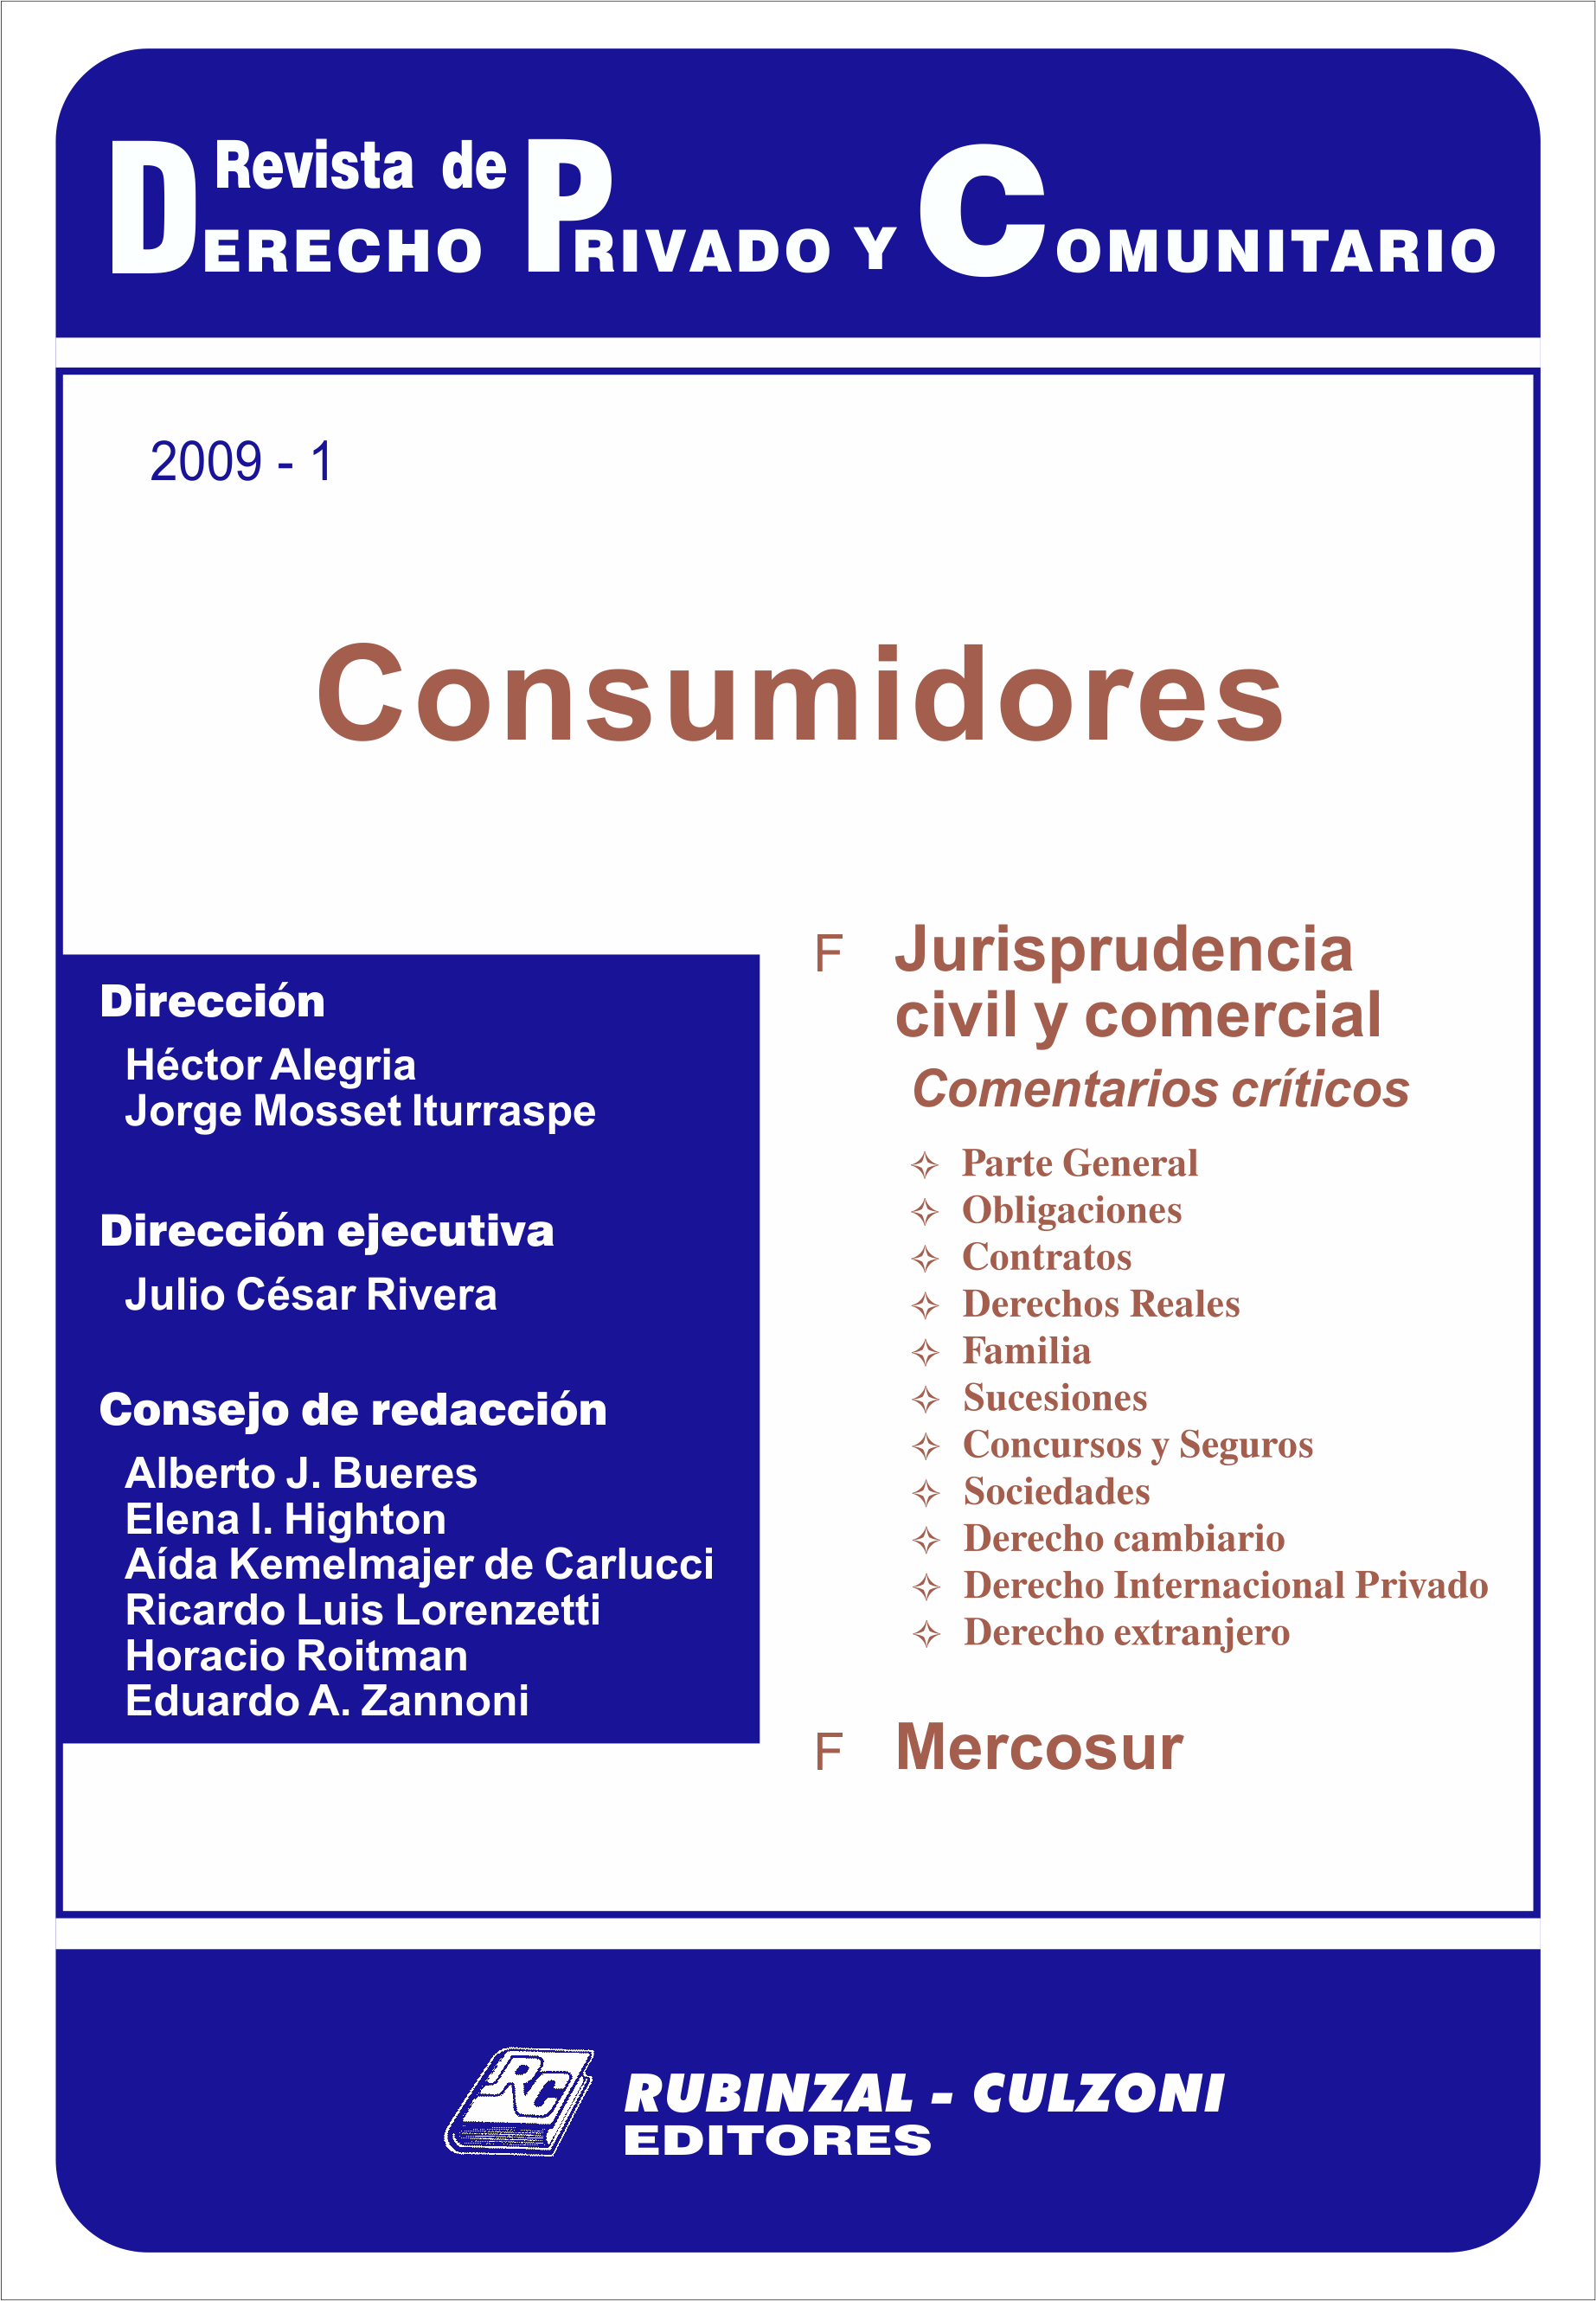 Revista de Derecho Privado y Comunitario - Consumidores